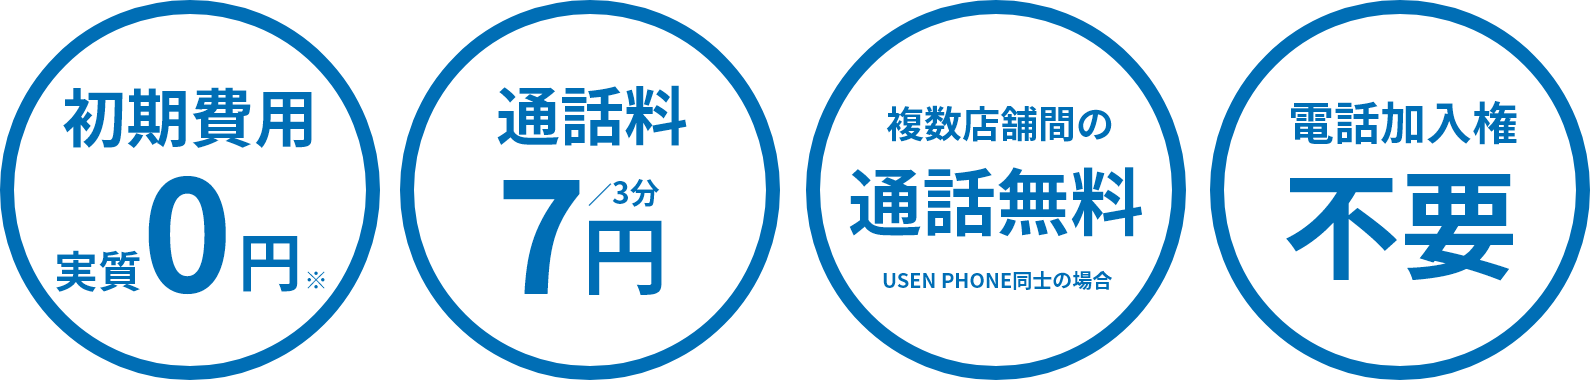 端末代0円、通話料7円（3分）、複数店舗間の通話料無料、電話加入権不要